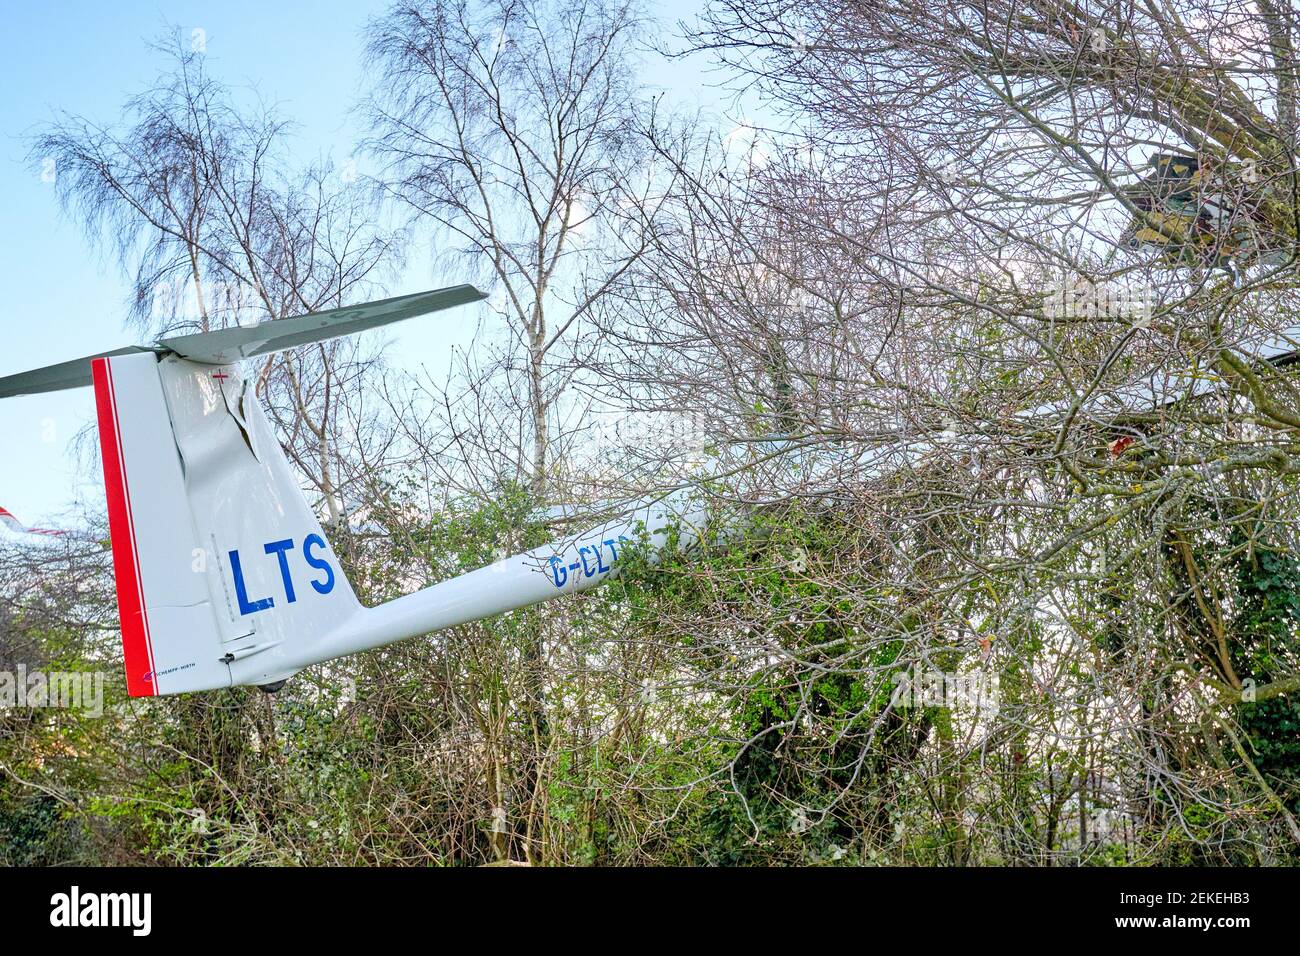 Vista general de un planeador Schempp-Hirth Arcus T después de que se estrelló en los árboles en el Parque de Caversfield cerca de Bicester. El piloto escapó sin heridos. Foto de stock